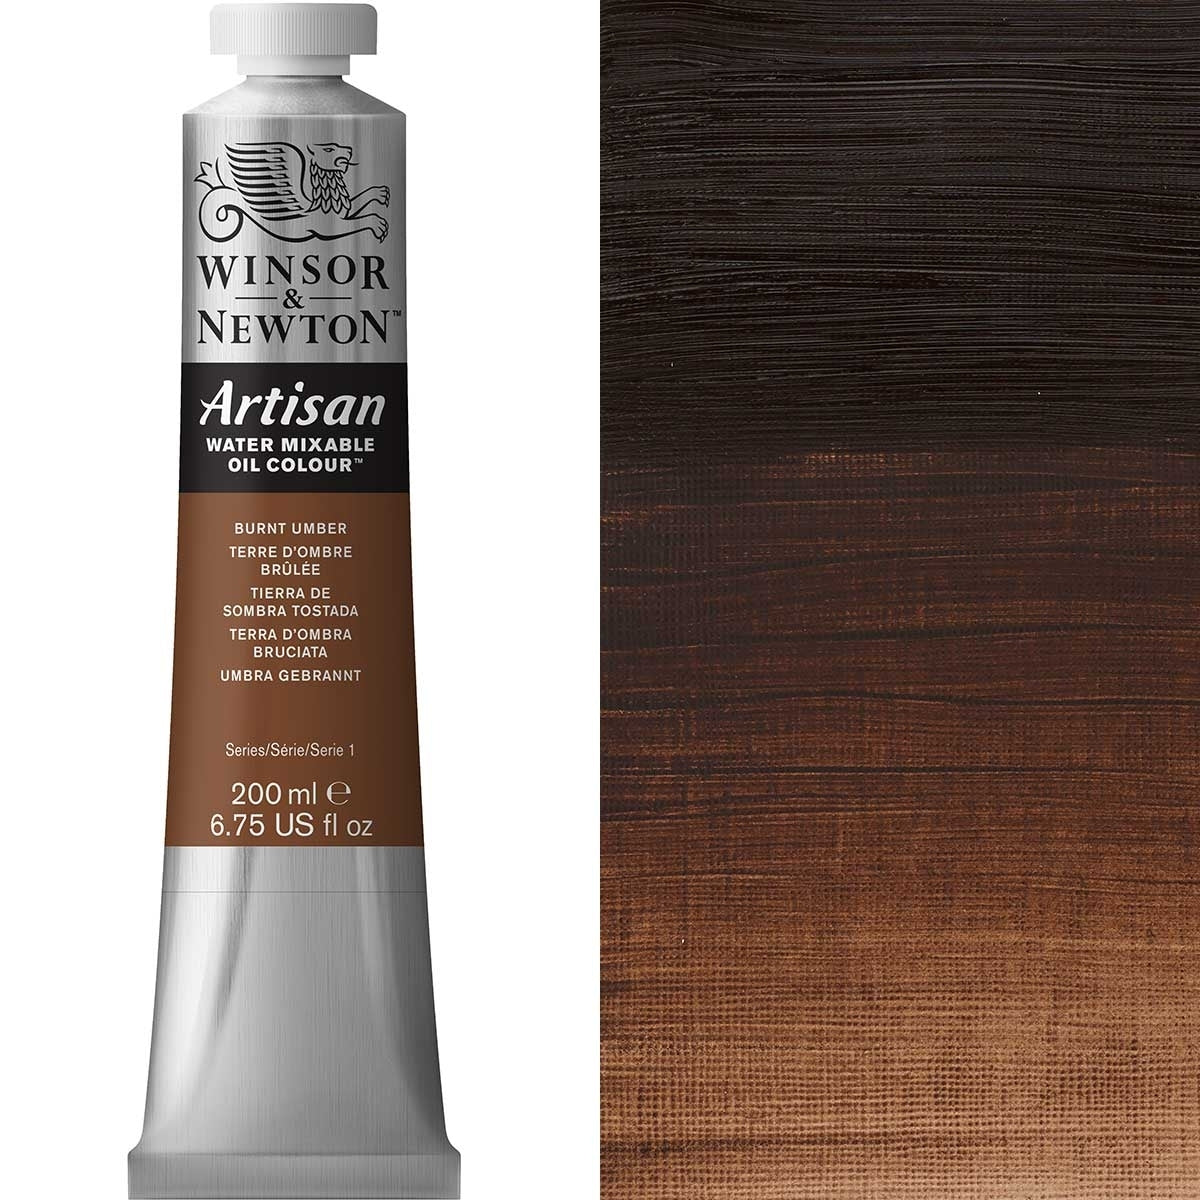 Winsor e Newton - Watermixable di colore olio artigianale - 200 ml - bruciata